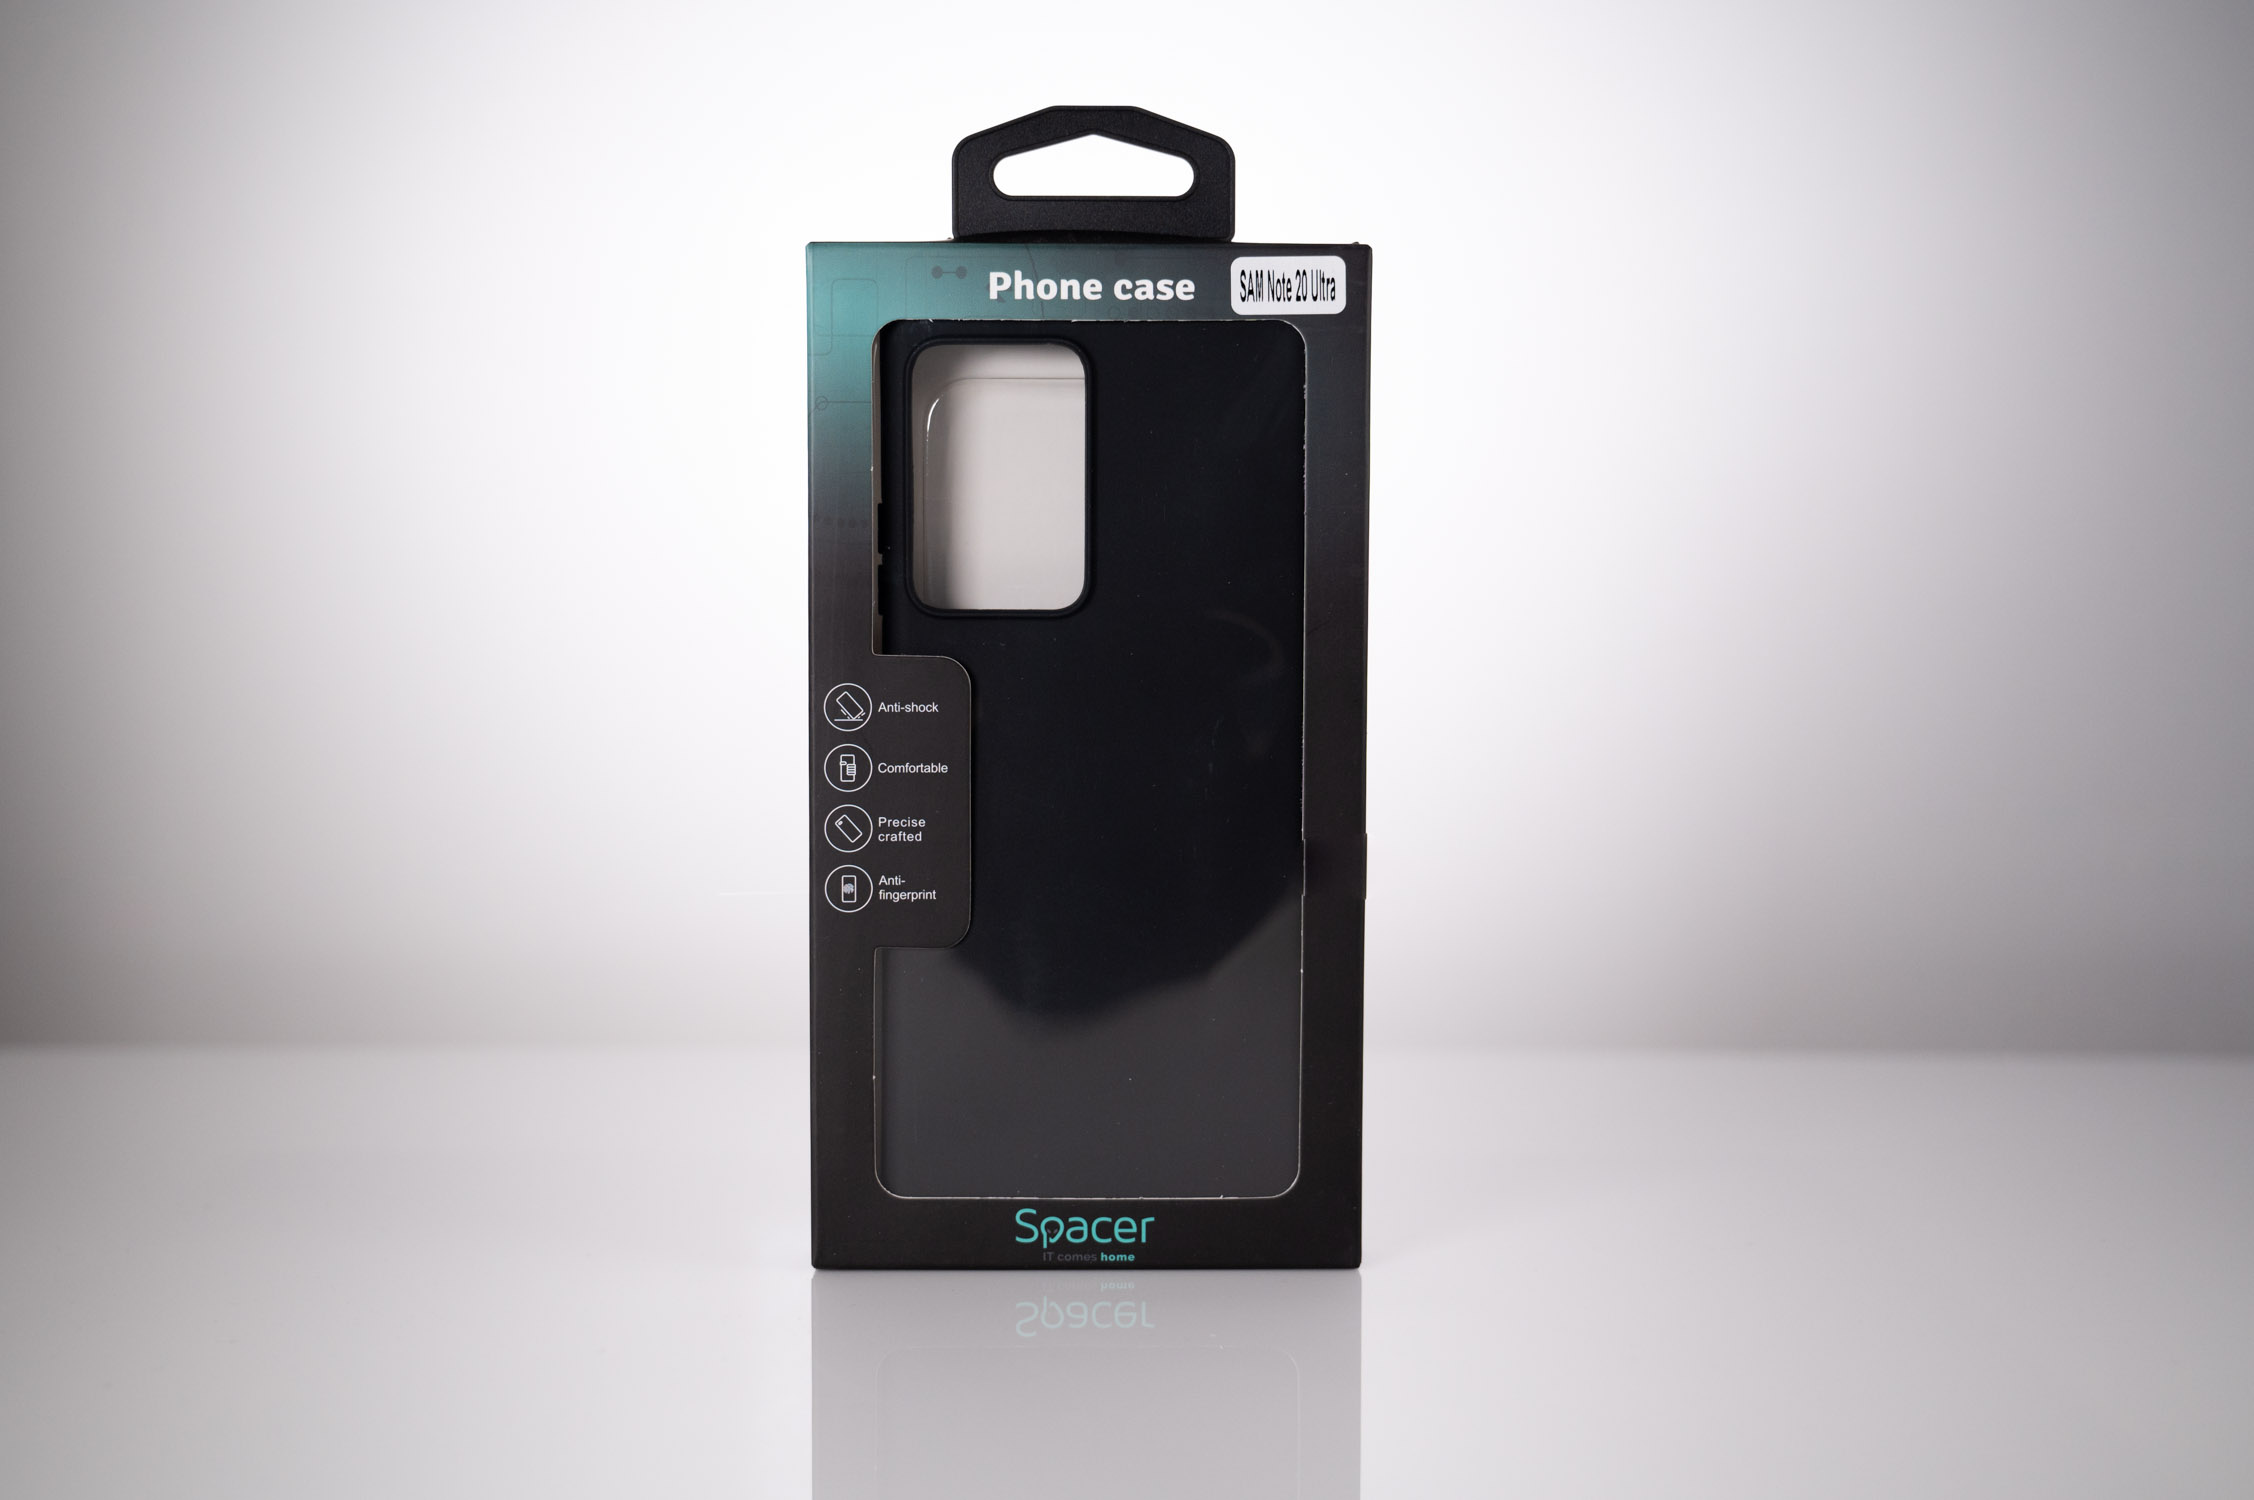 HUSA SMARTPHONE Spacer pentru Samsung Galaxy Note 20 Ultra, grosime 1.5mm, material flexibil TPU, negru "SPPC-SM-GX-N20U-TPU" thumb